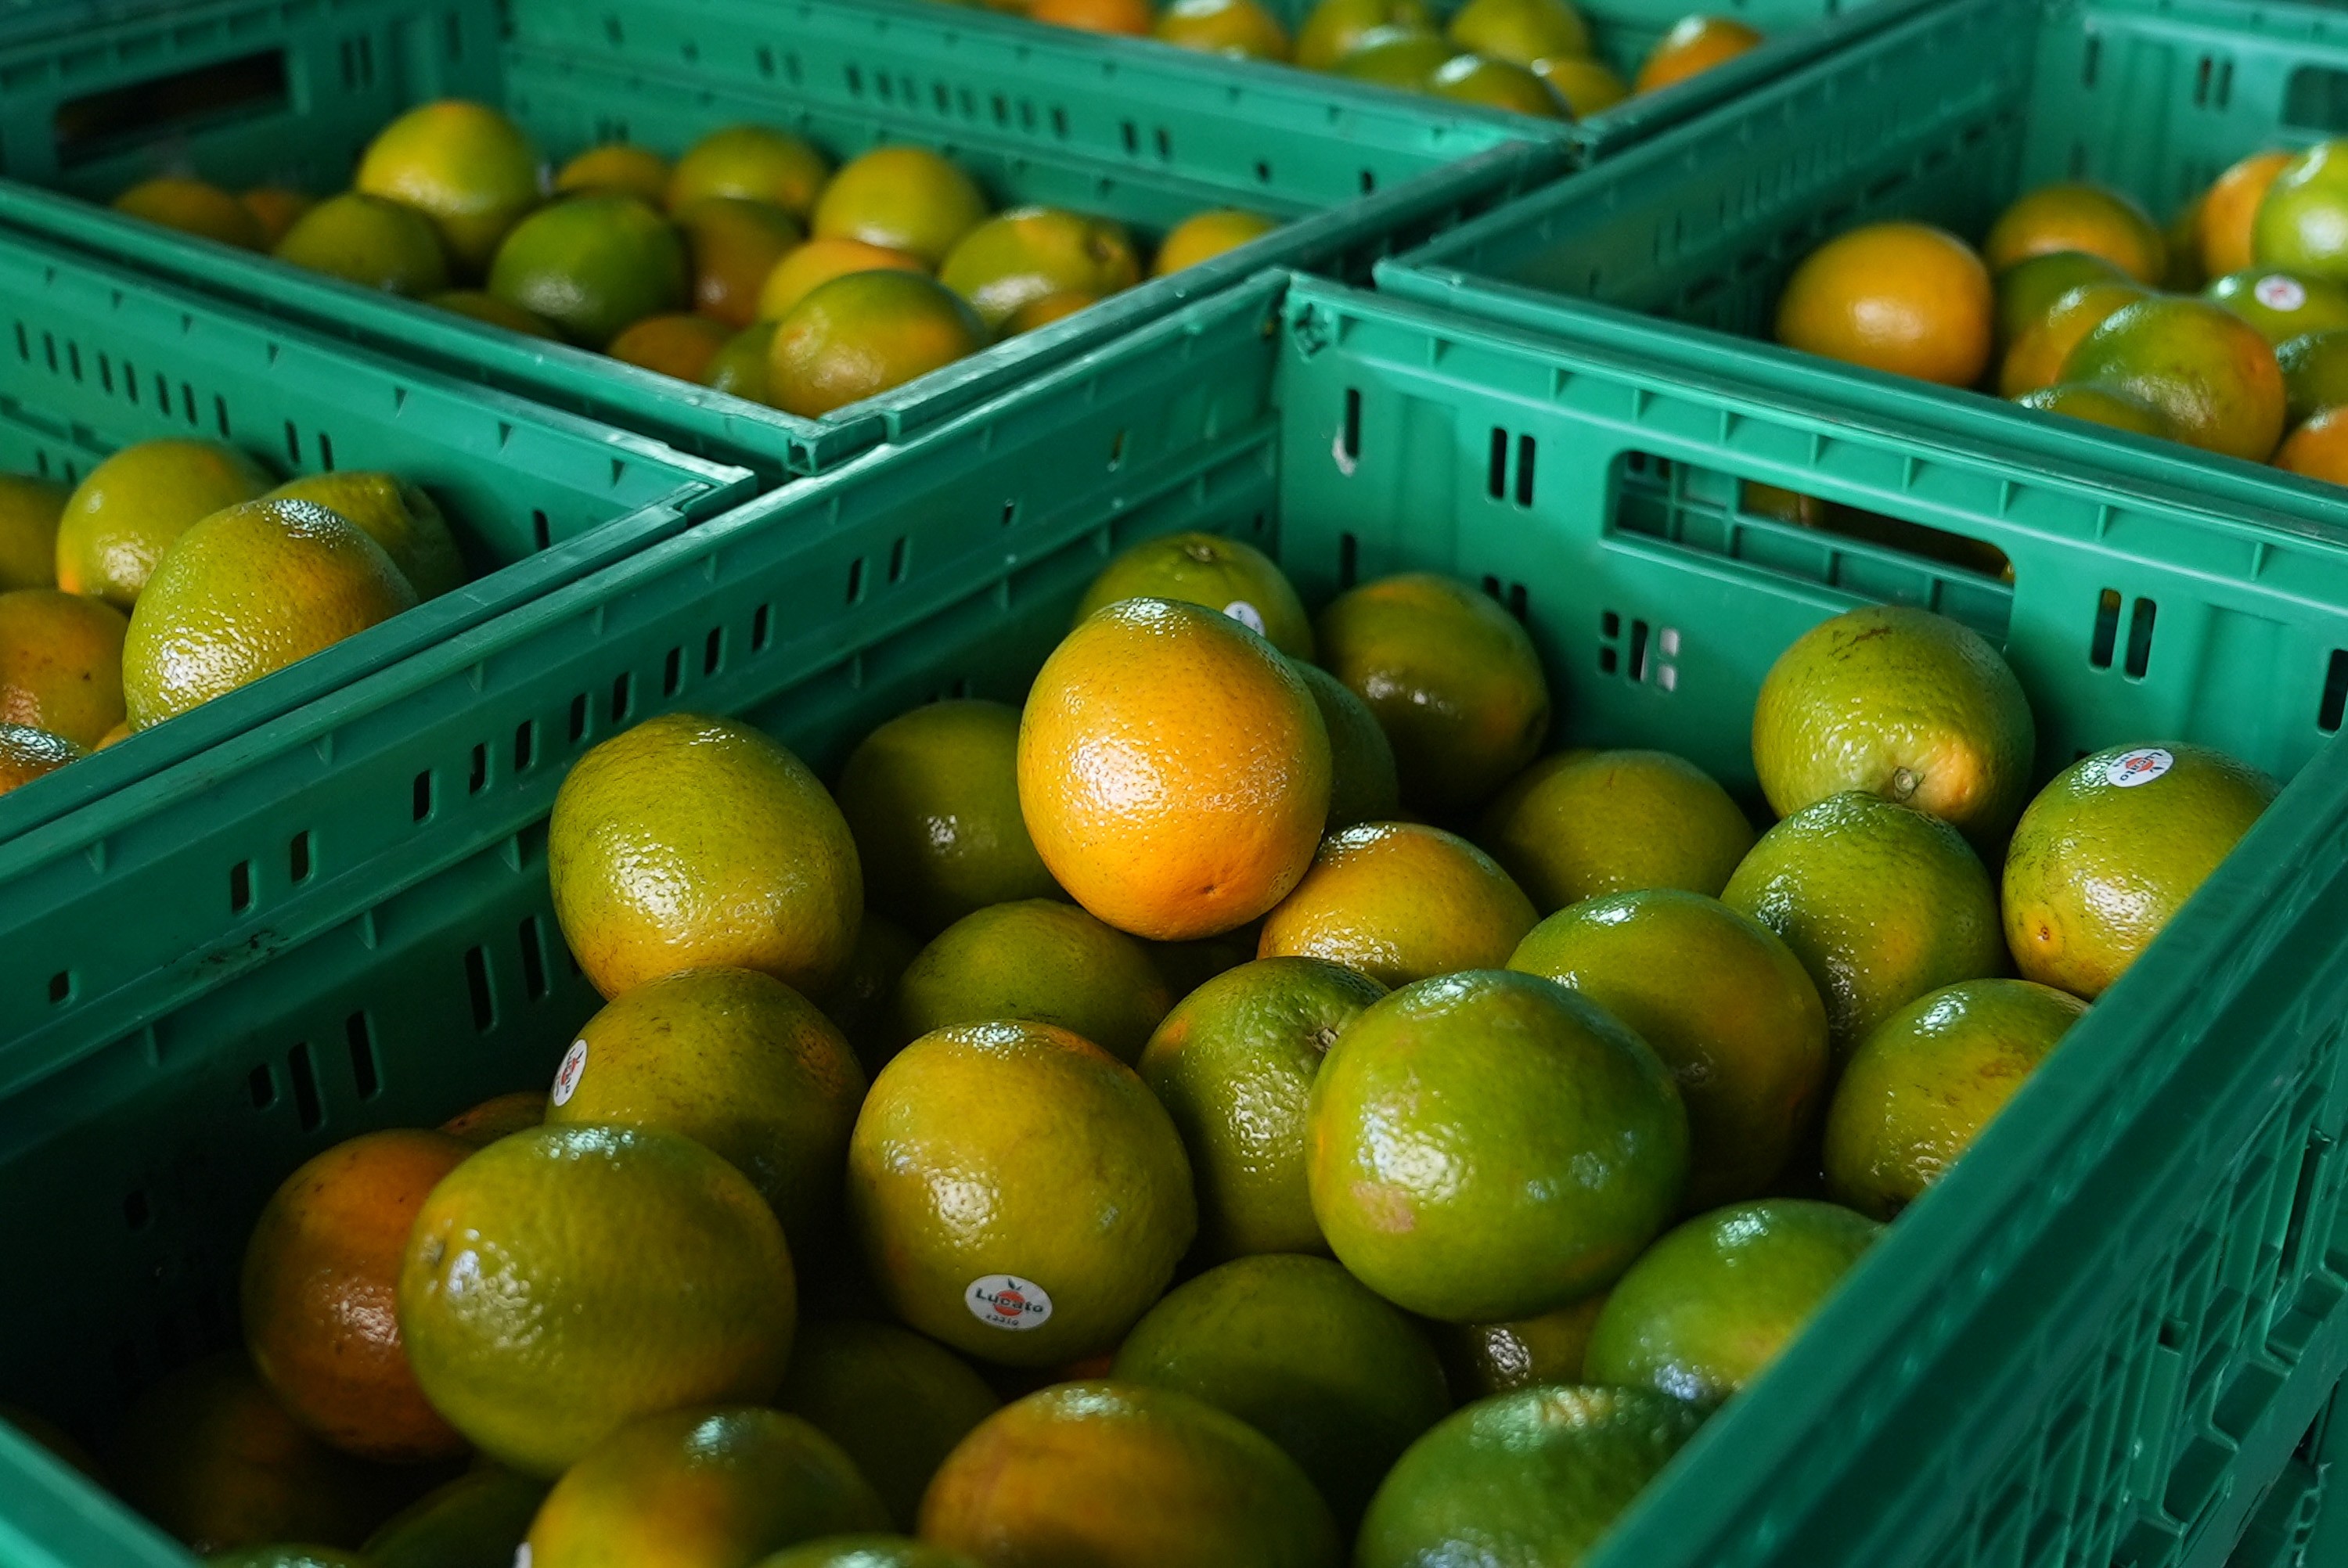 Calor e greening impactam safra da laranja e preço da fruta alcança maior patamar em 30 anos em São Paulo, aponta estudo da USP